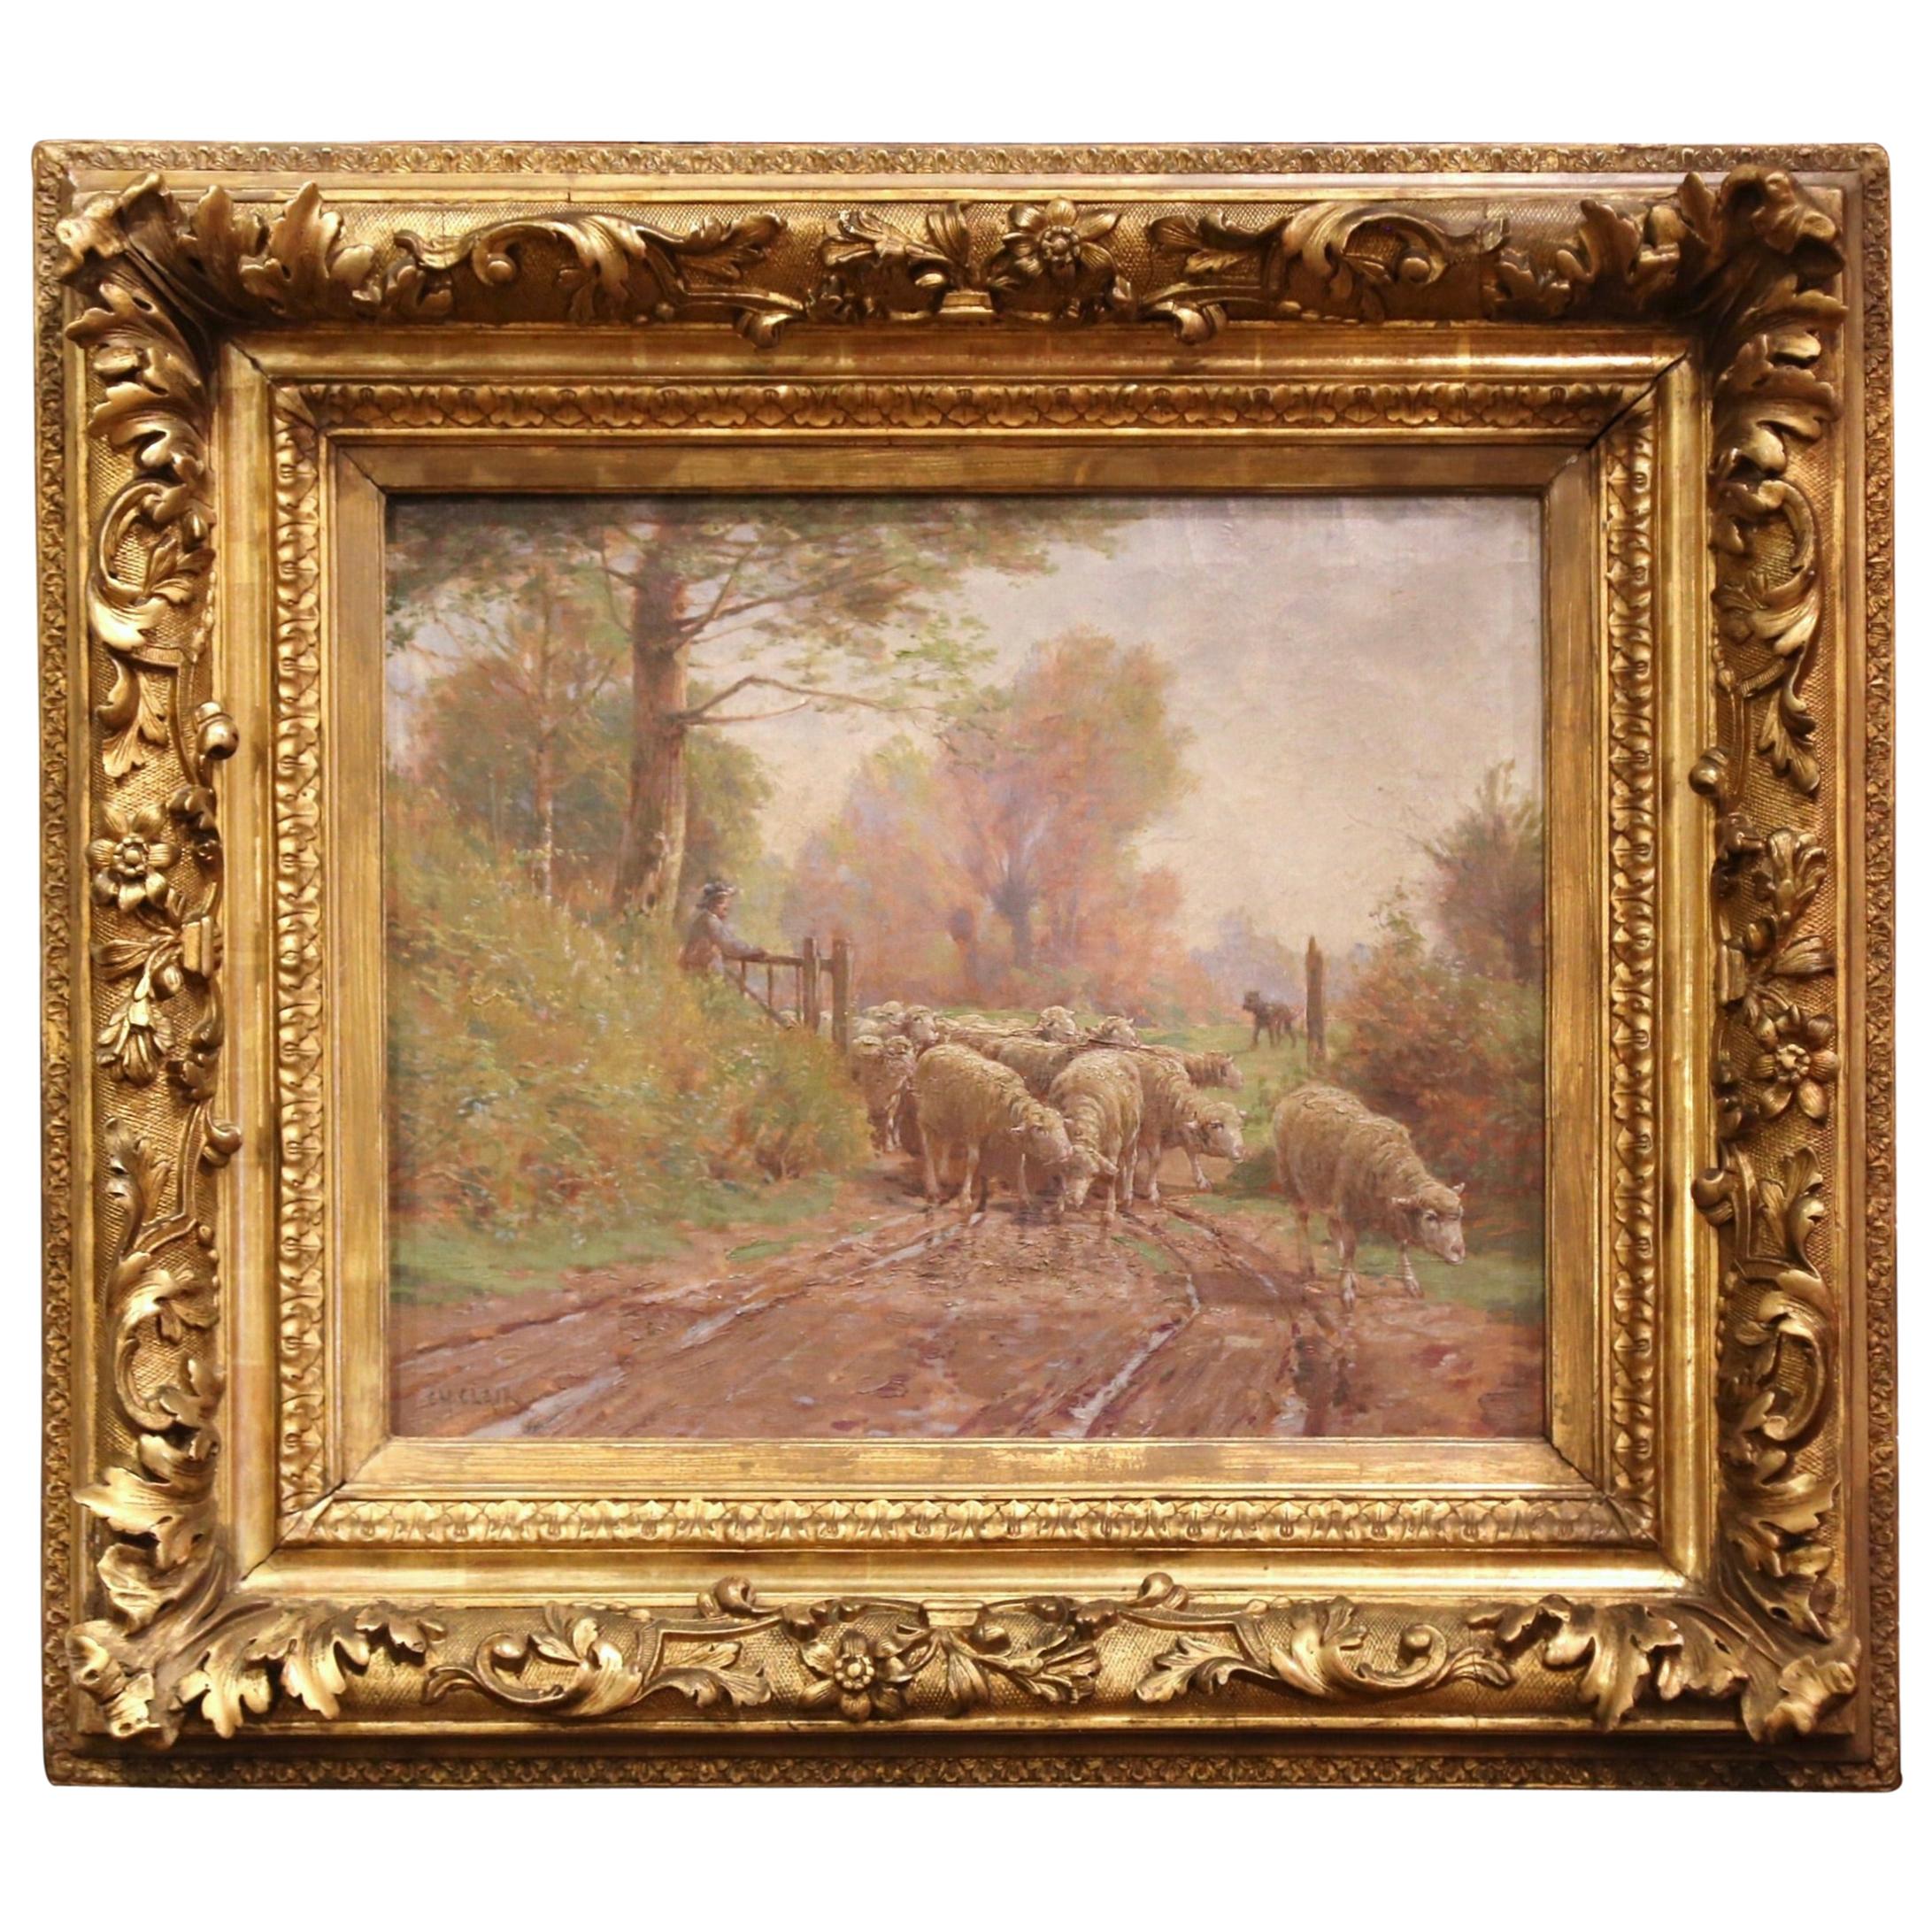 Französische Schafe, Gemälde in geschnitztem vergoldetem Rahmen, signiert Charles Clair, 19. Jahrhundert